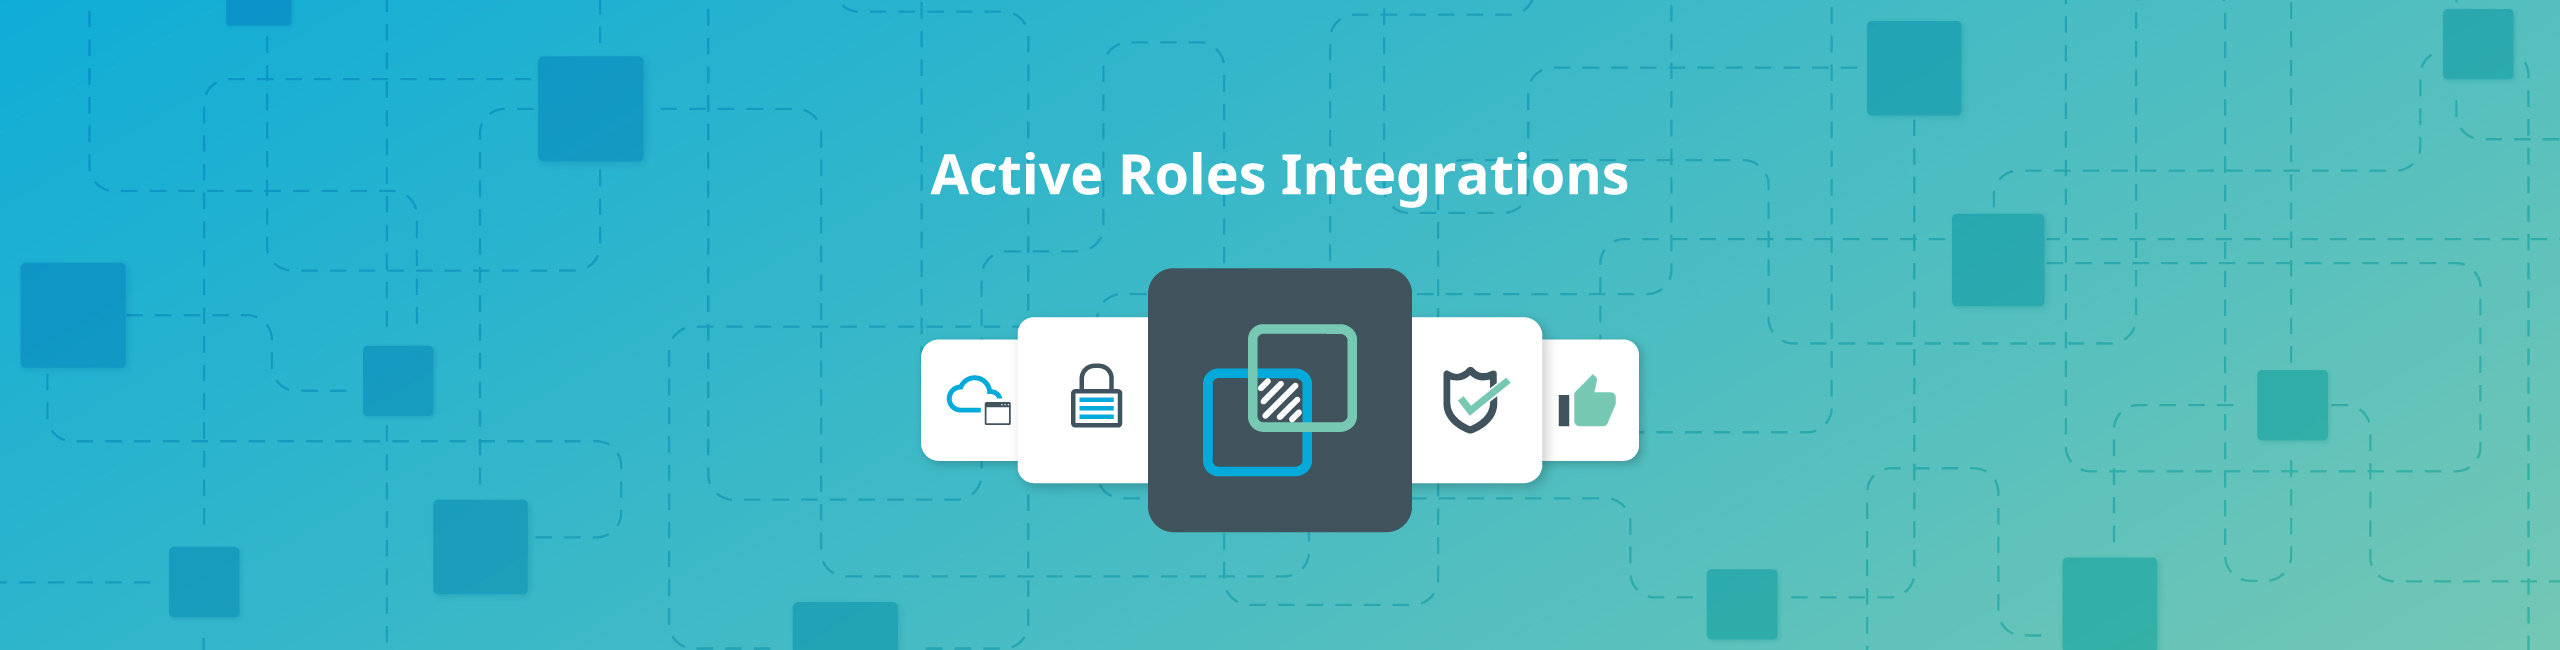 Active Roles Integrations